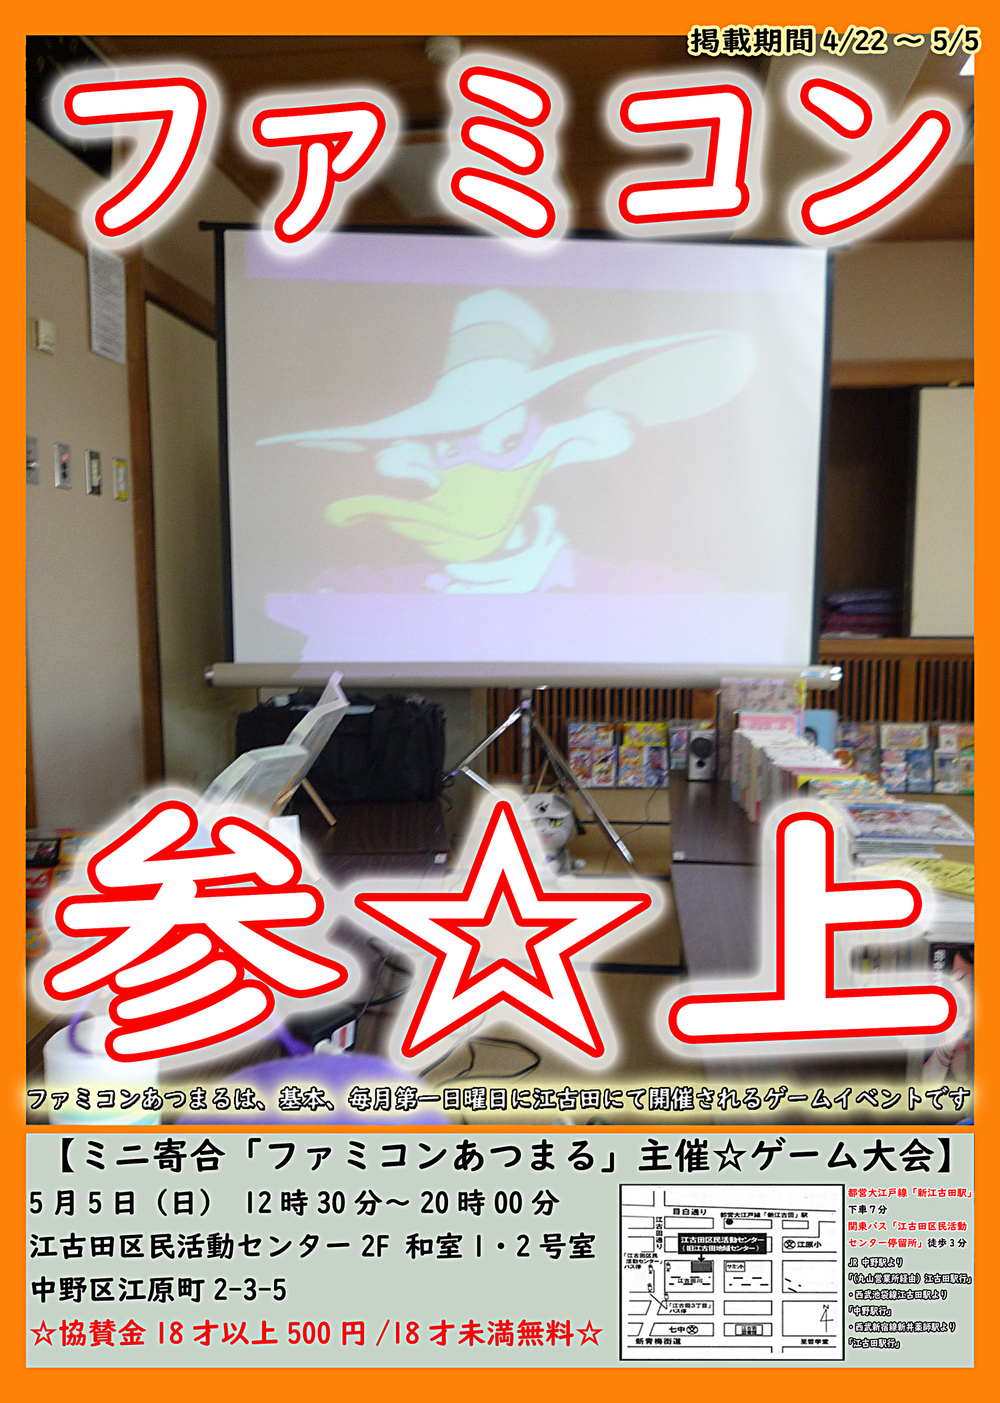 Mini Yoriai“Famicom Atsumaru”赞助☆游戏锦标赛